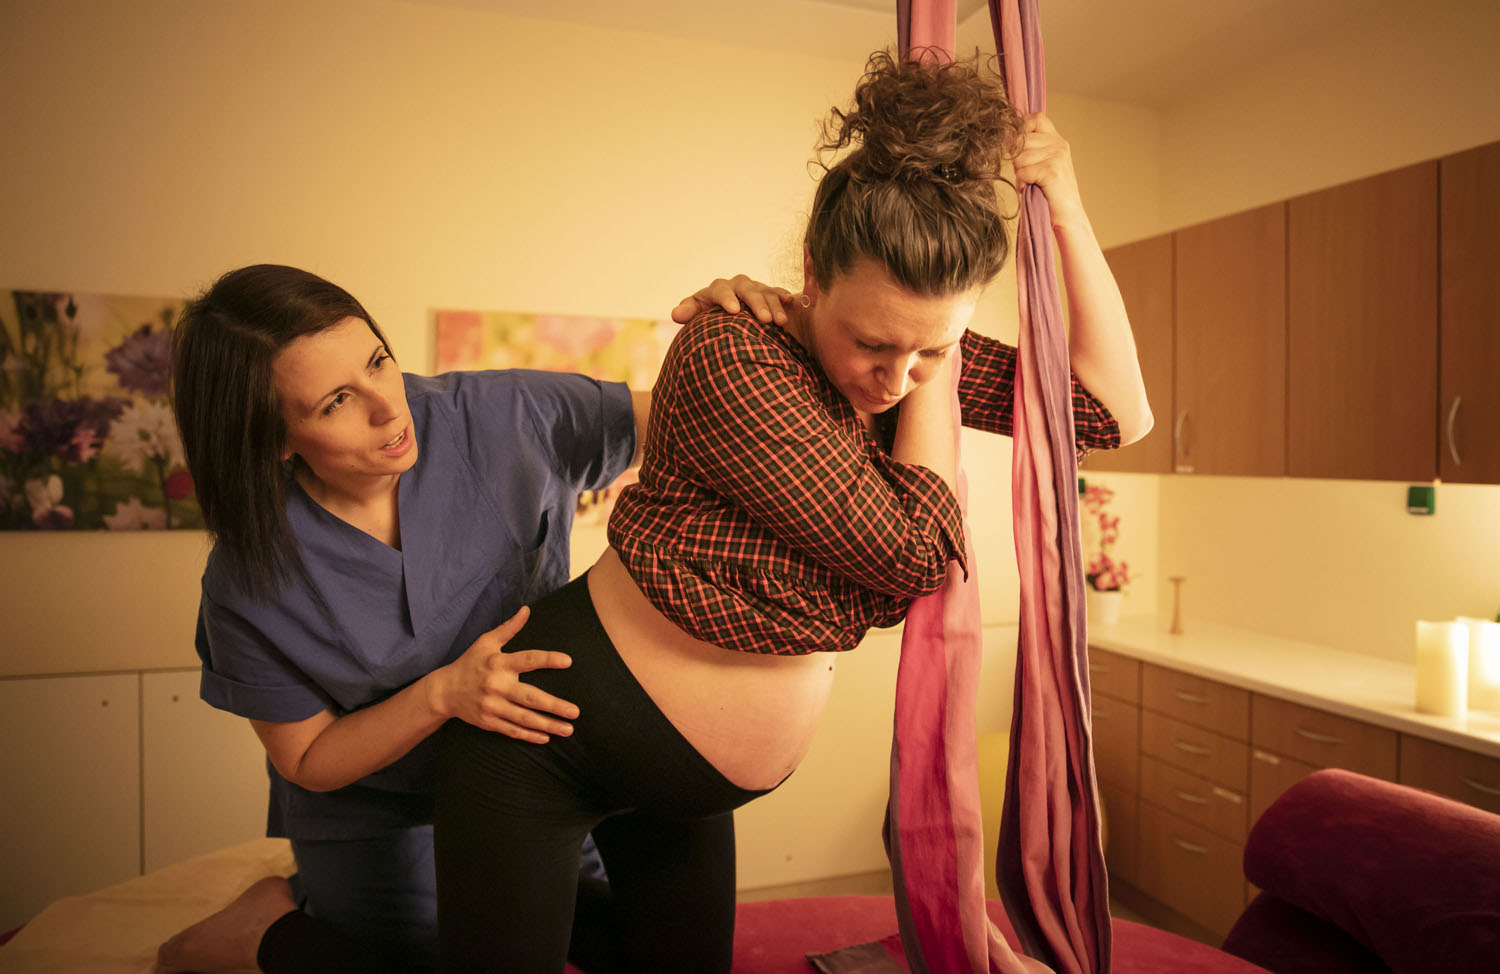 Healthcare Fotografie: Im Kreissaal bereitet sich eine werdende Mutter auf die Geburt vor. Sie trägt noch ihre Kleidung. Eine Hebamme unterstützt sie.